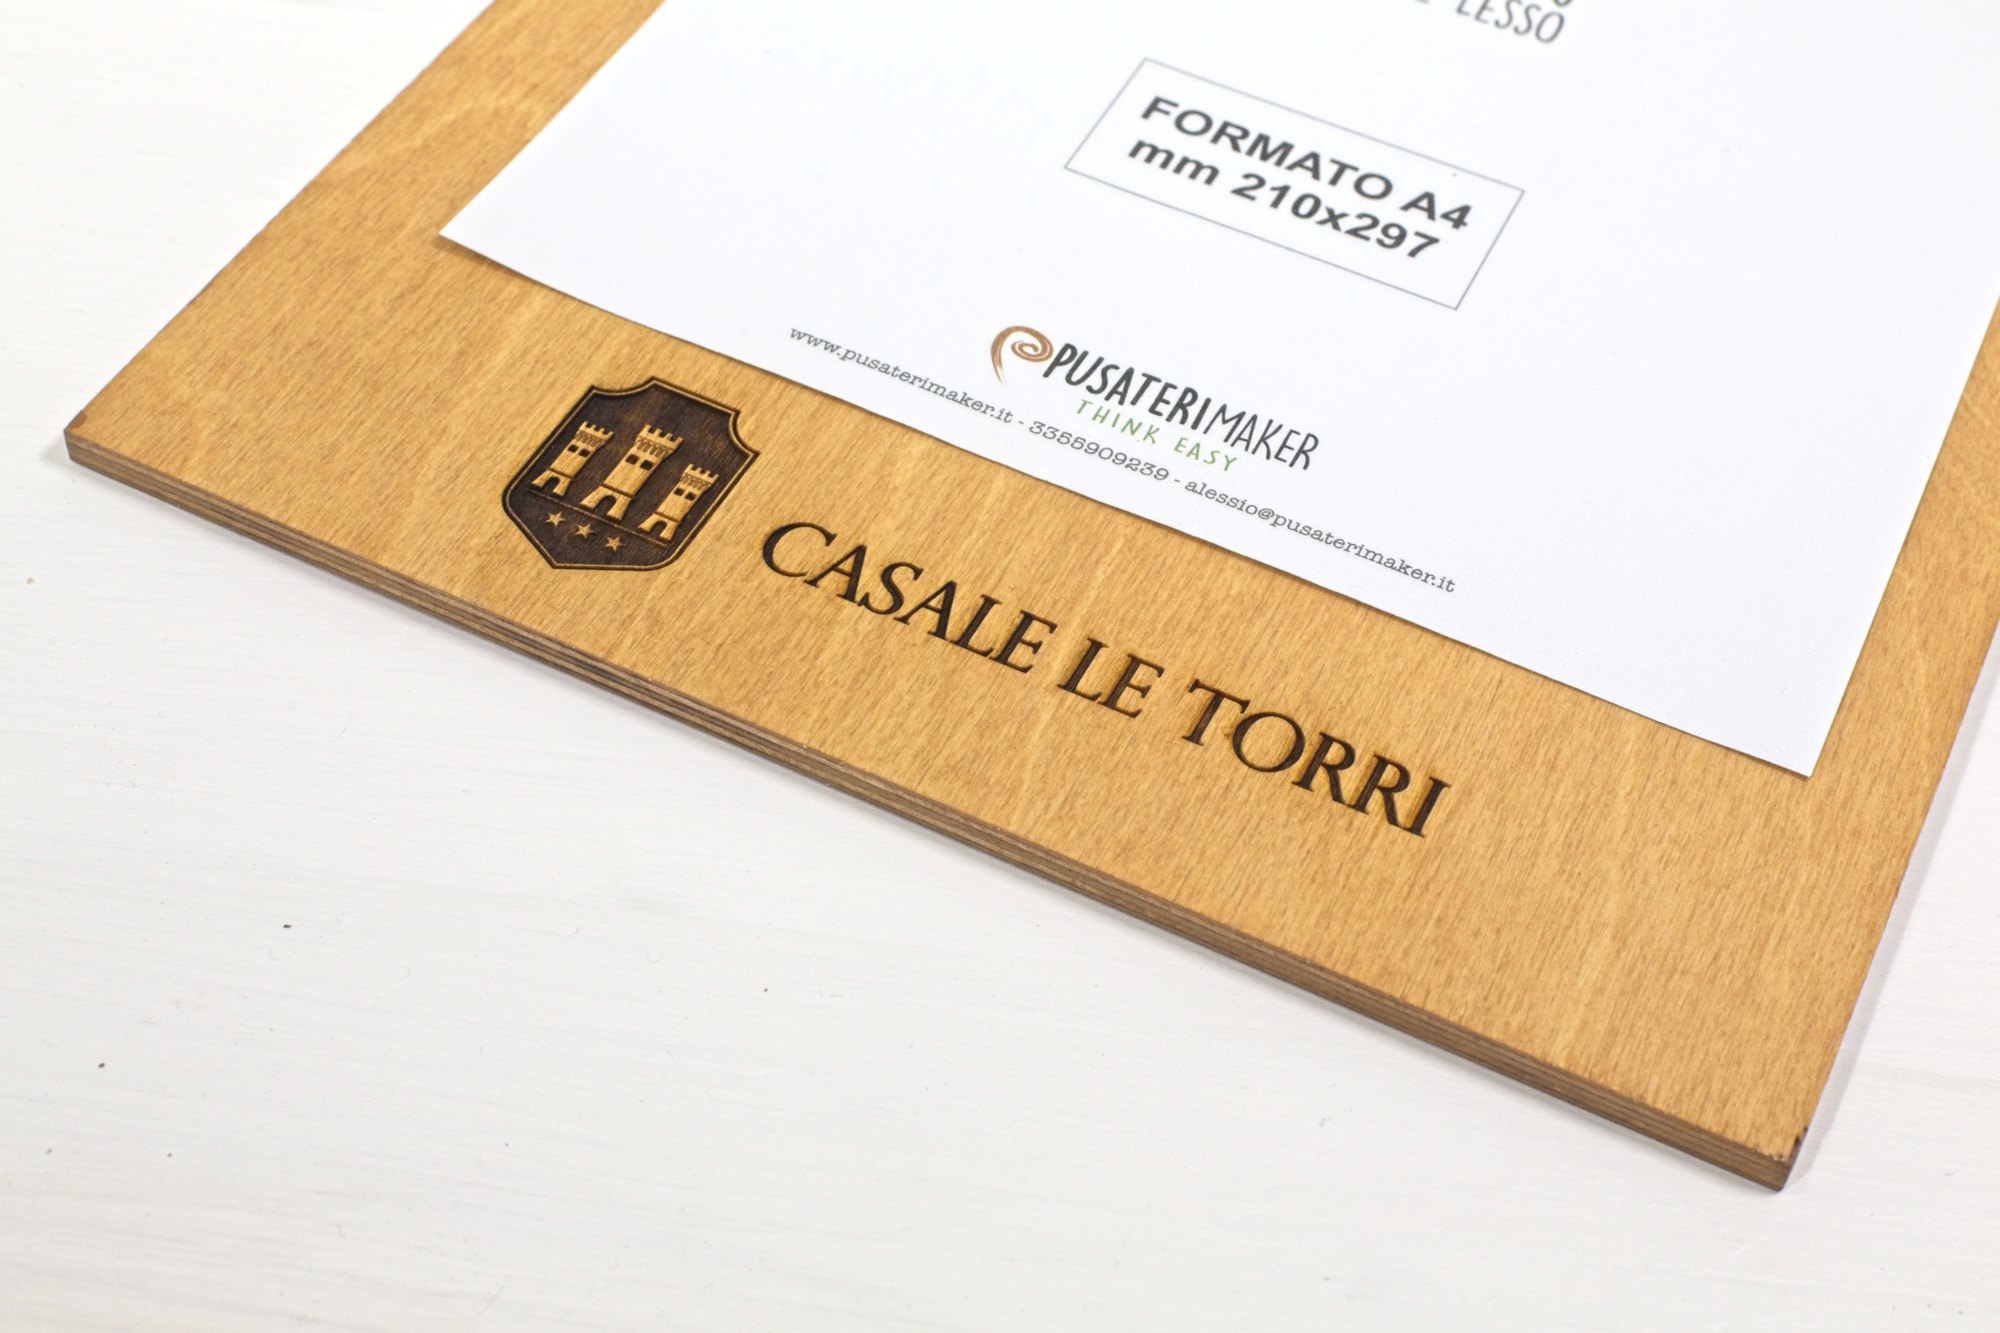 Acqua dei Corsari - Portamenu clipboard in legno - Casale Le Torri